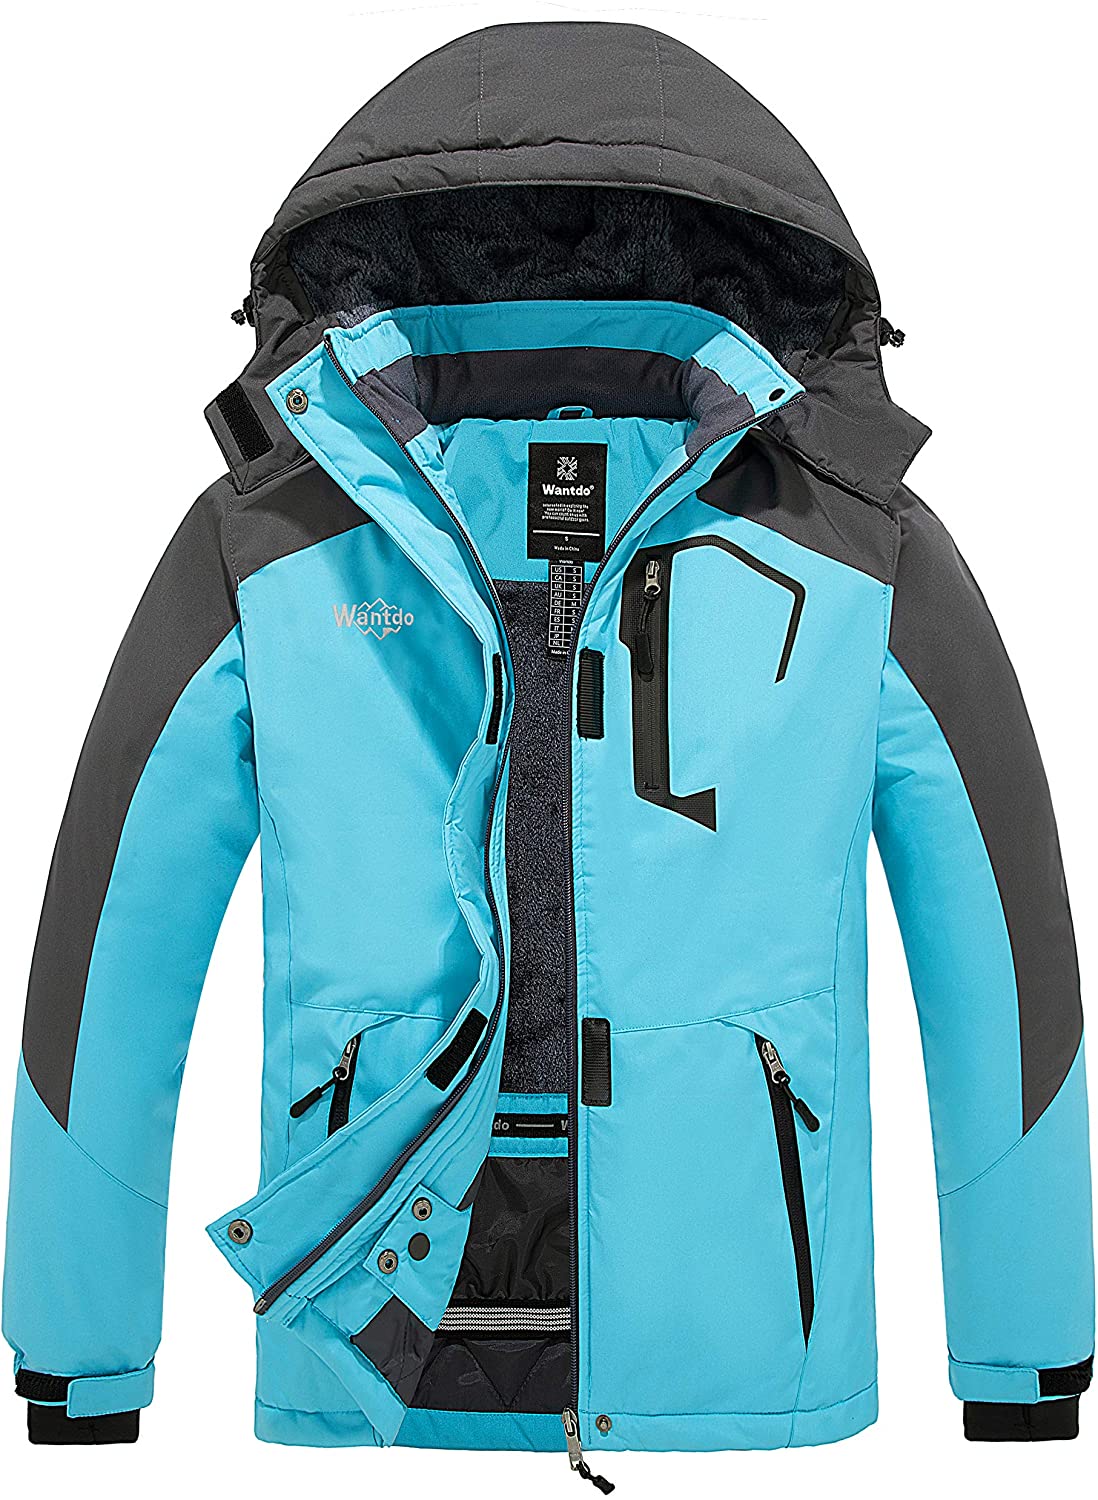 Wantdo Women's Mountain Windproof Winter Coat Waterproof Ski